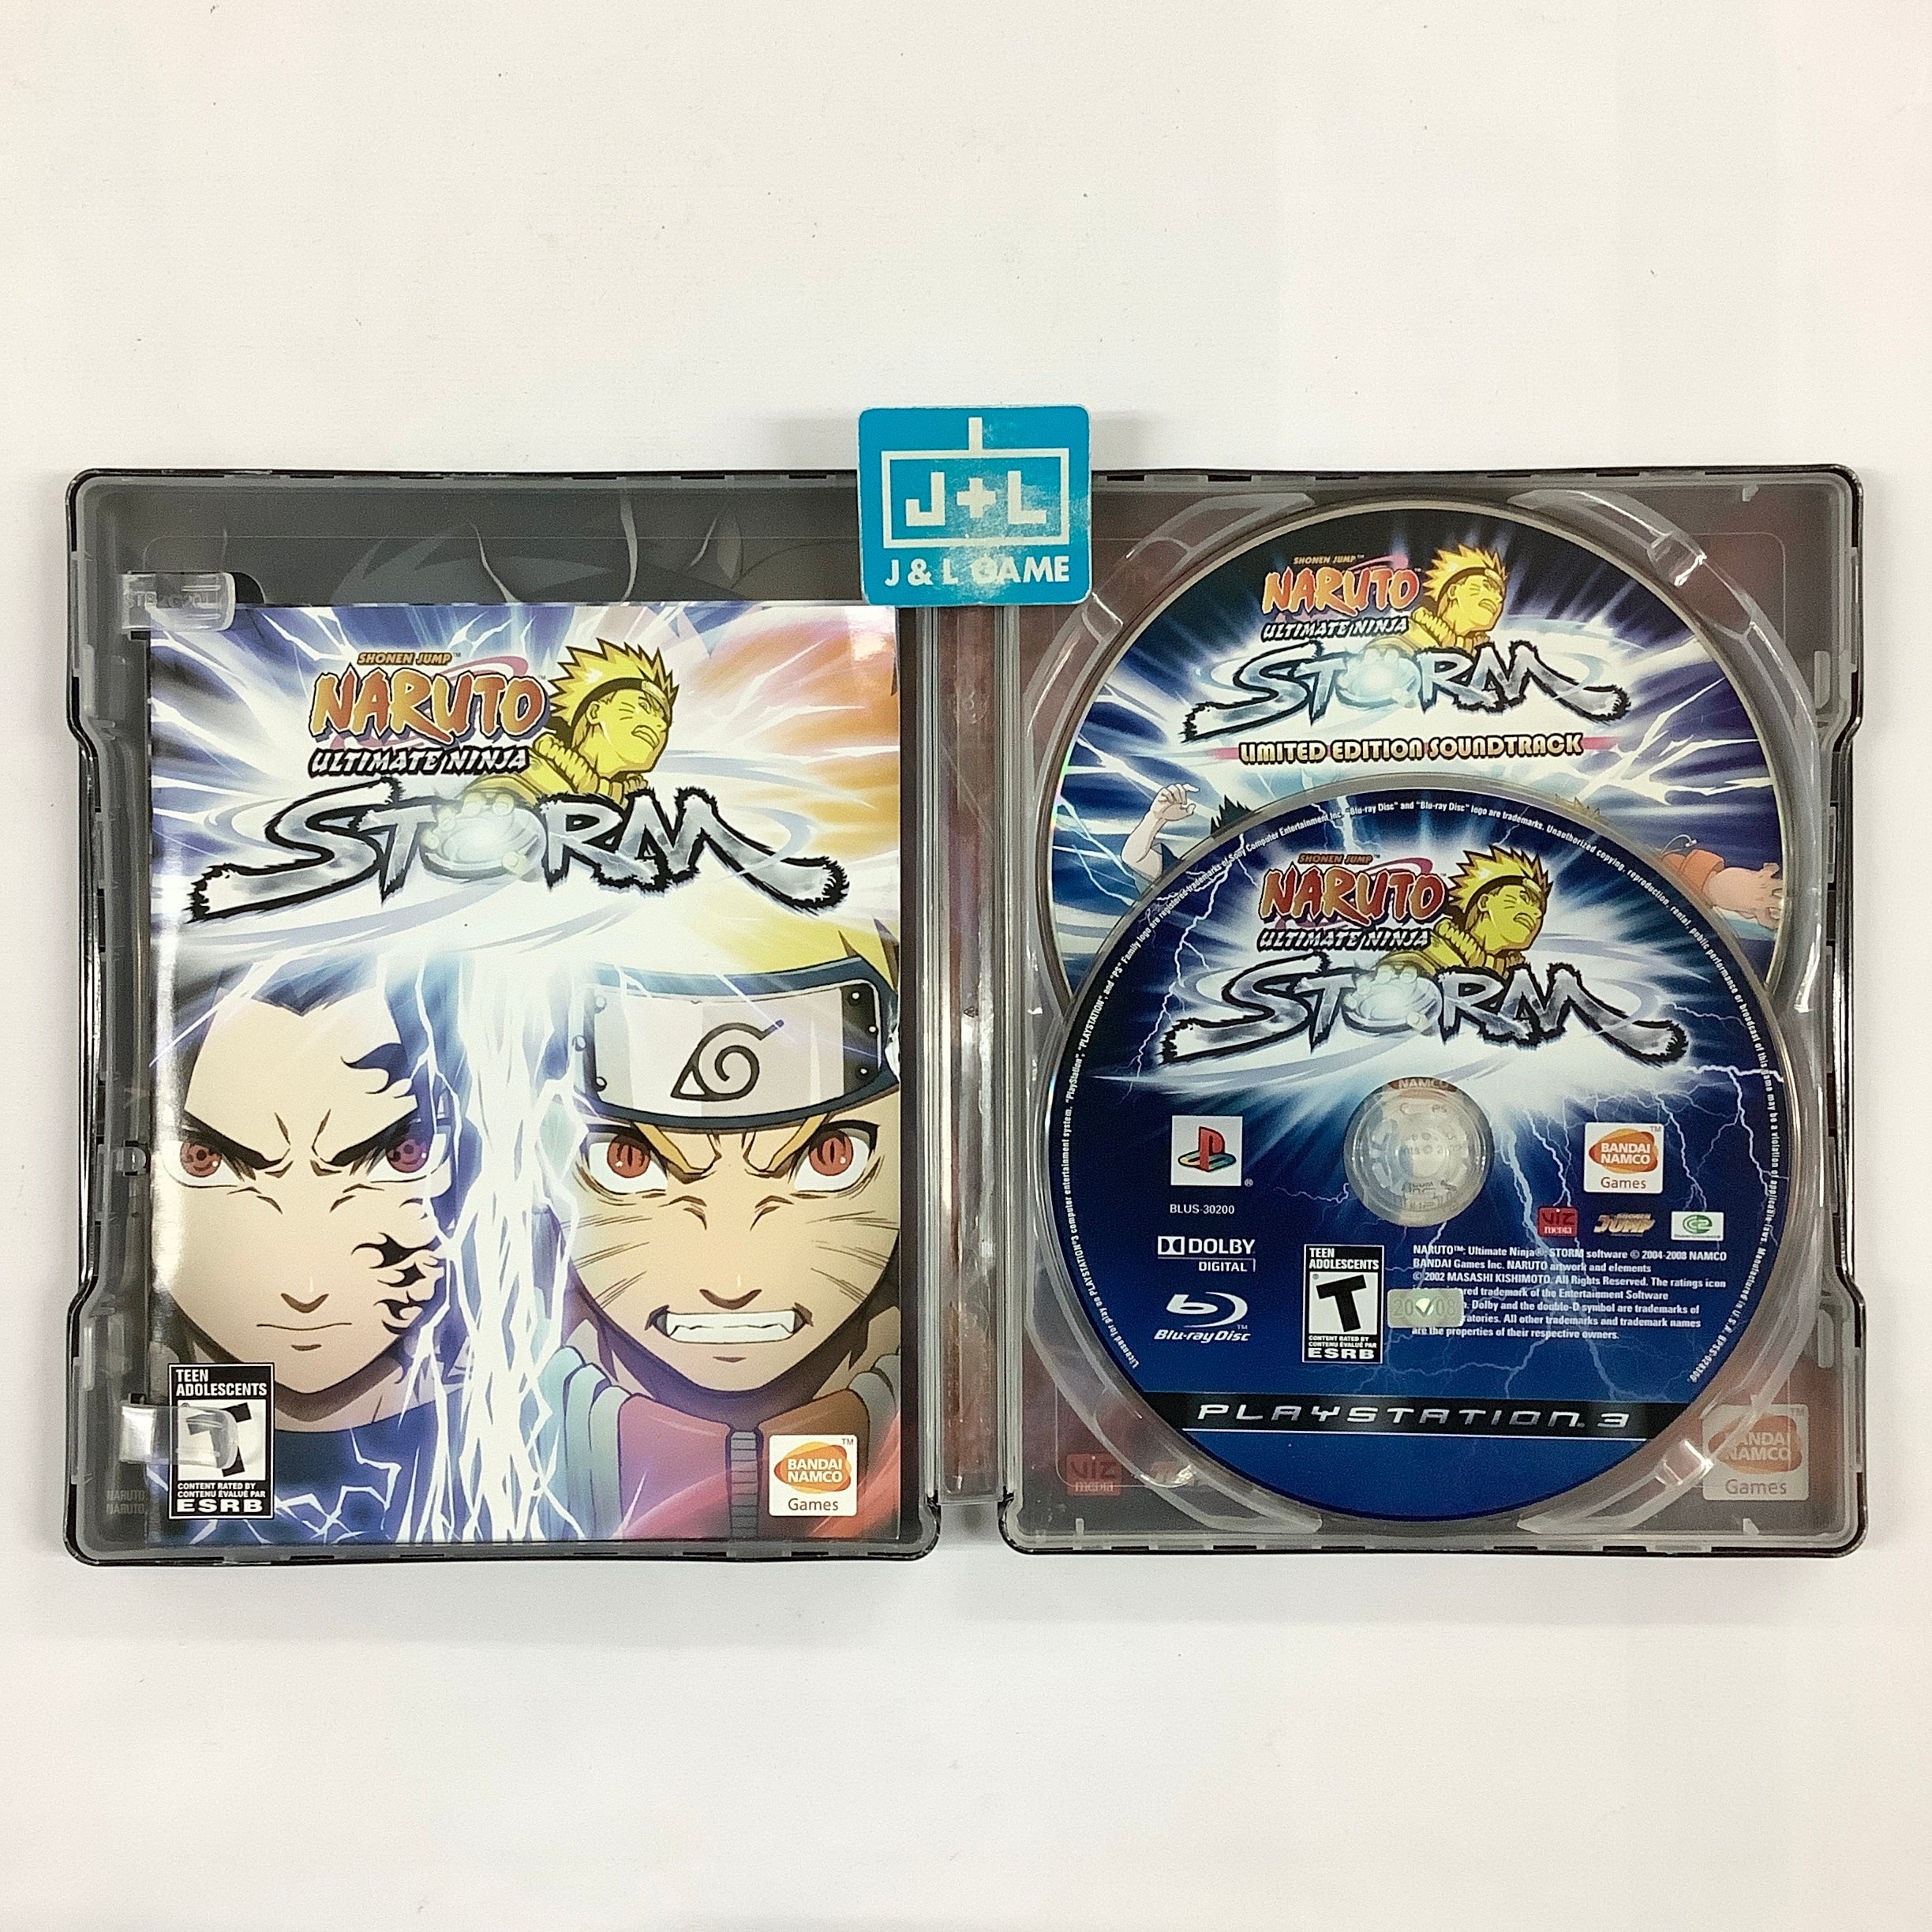 Naruto: Ultimate Ninja Storm (Limited Edition) - (PS3) PlayStation 3 [Pre-Owned] Video Games Namco Bandai Games   